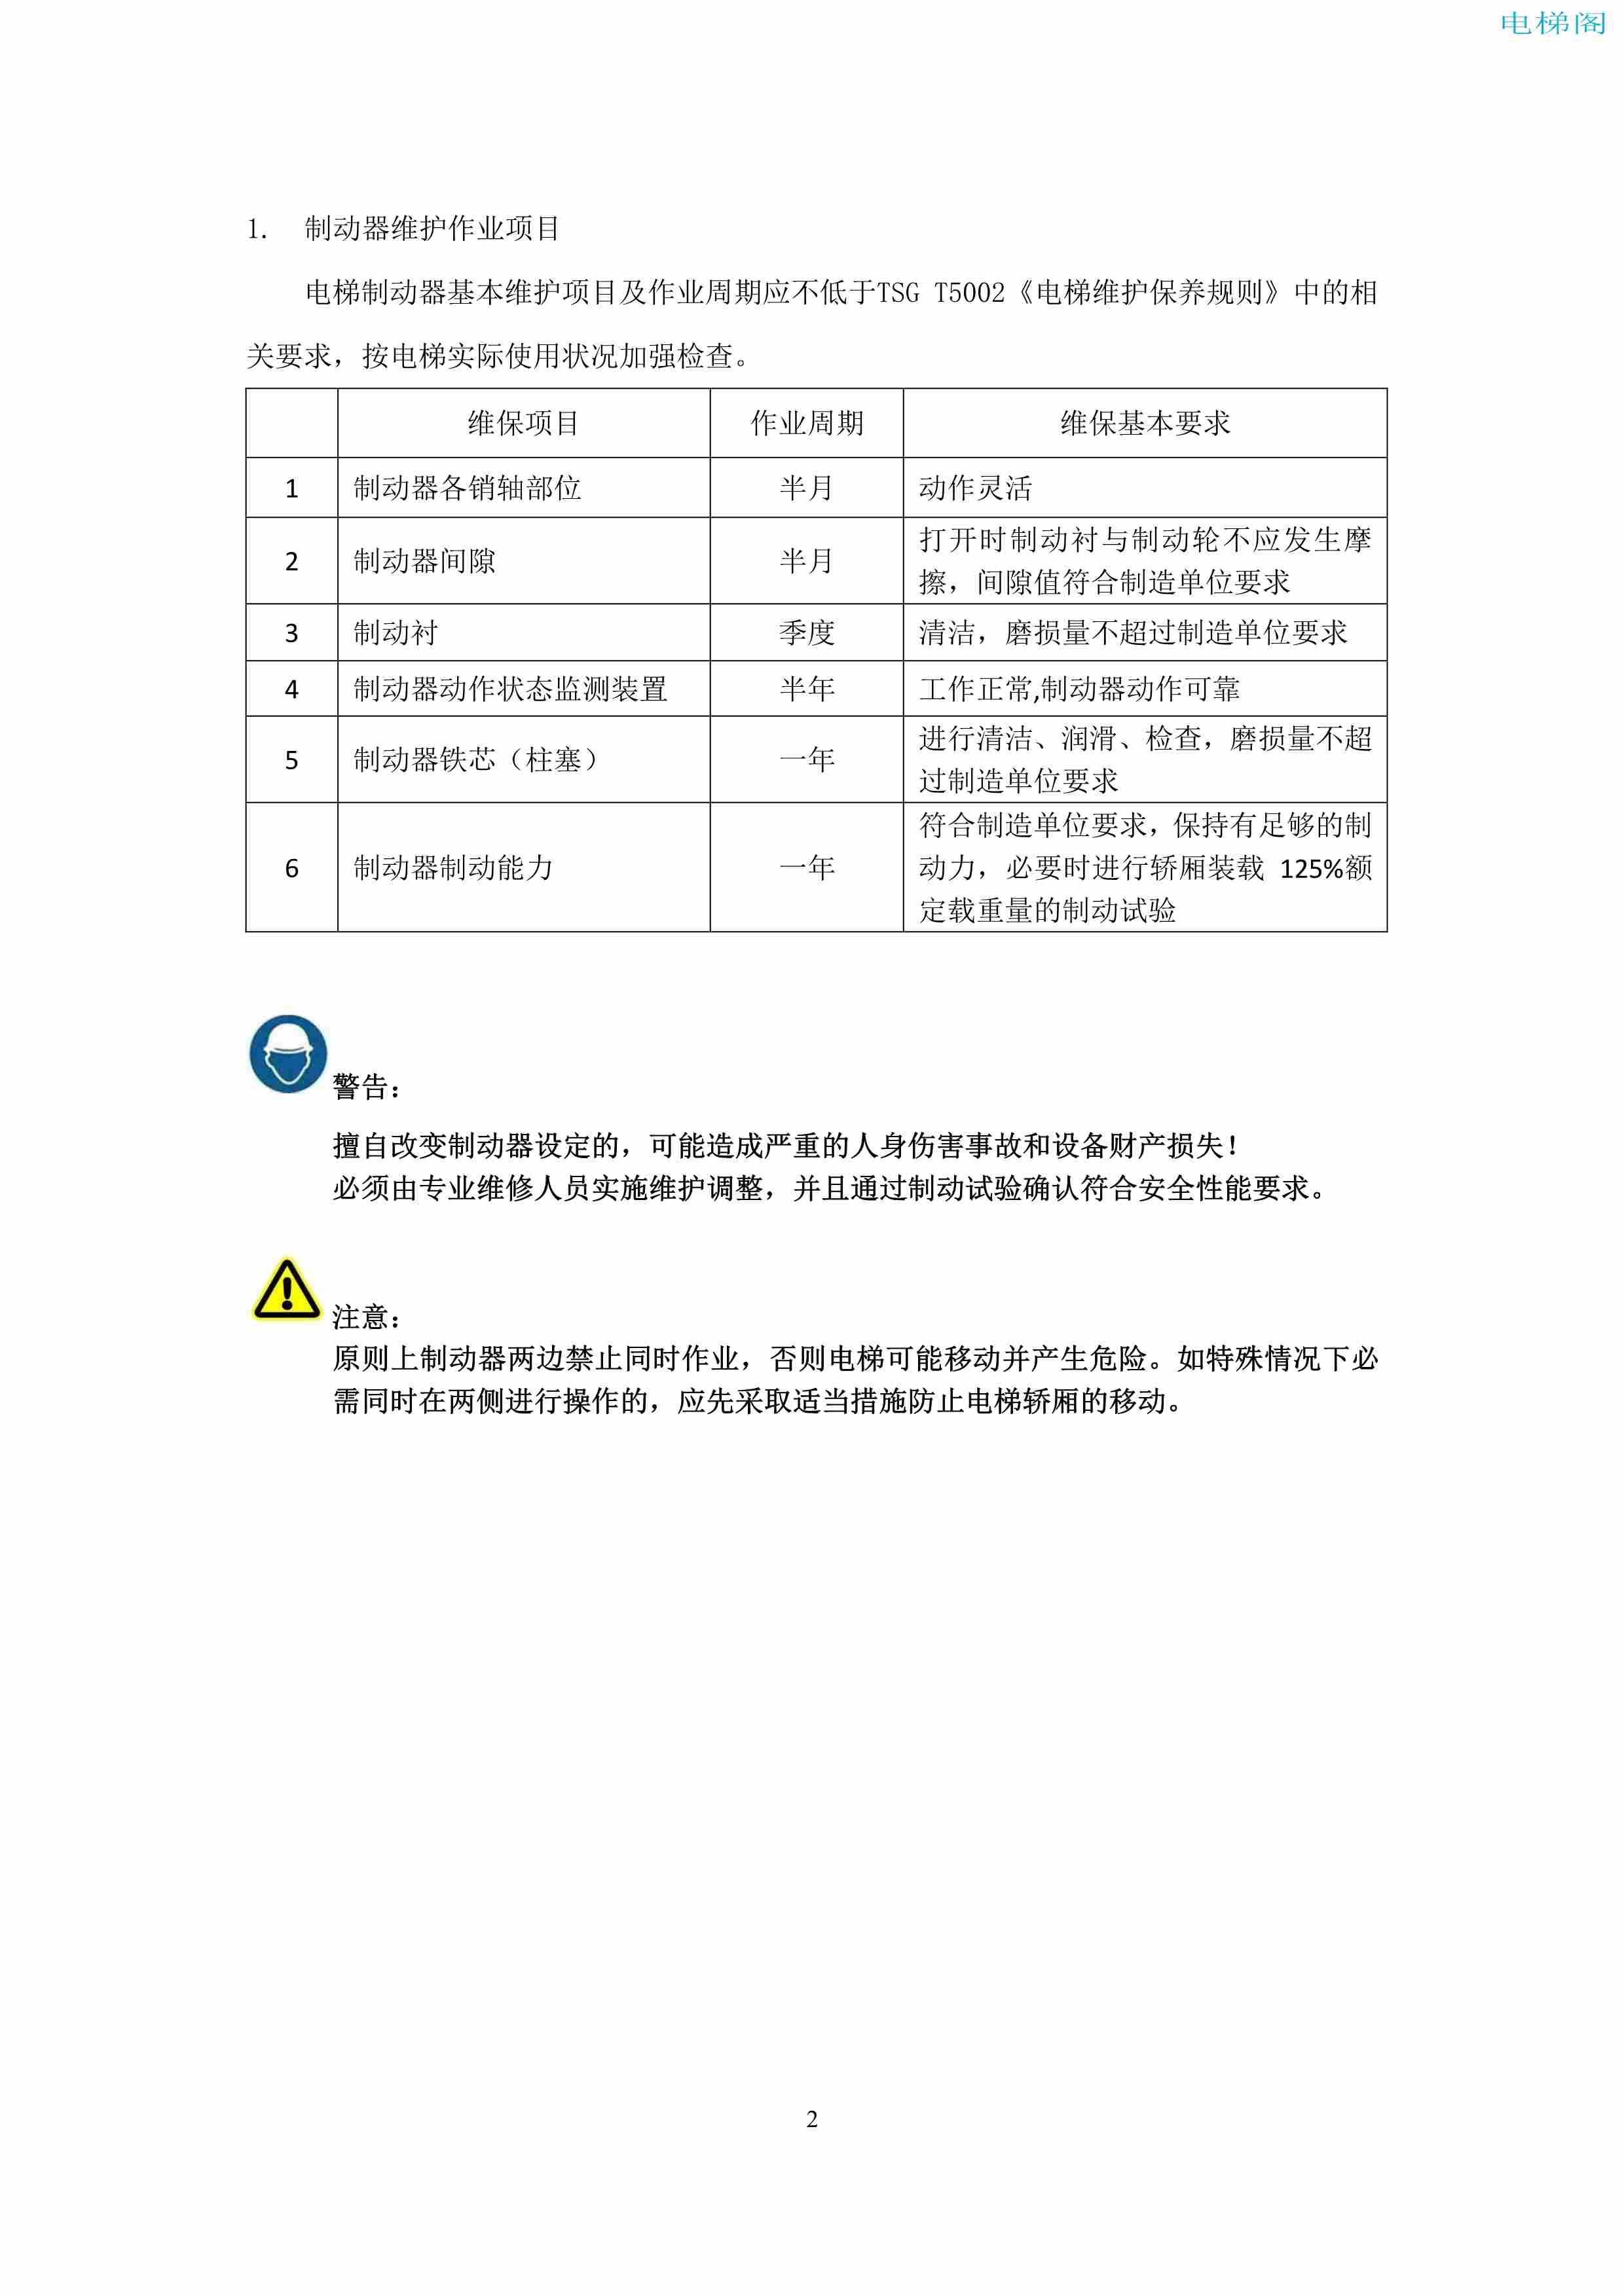 上海三菱电梯有限公司电梯制动器维护作业要领汇编_4.jpg